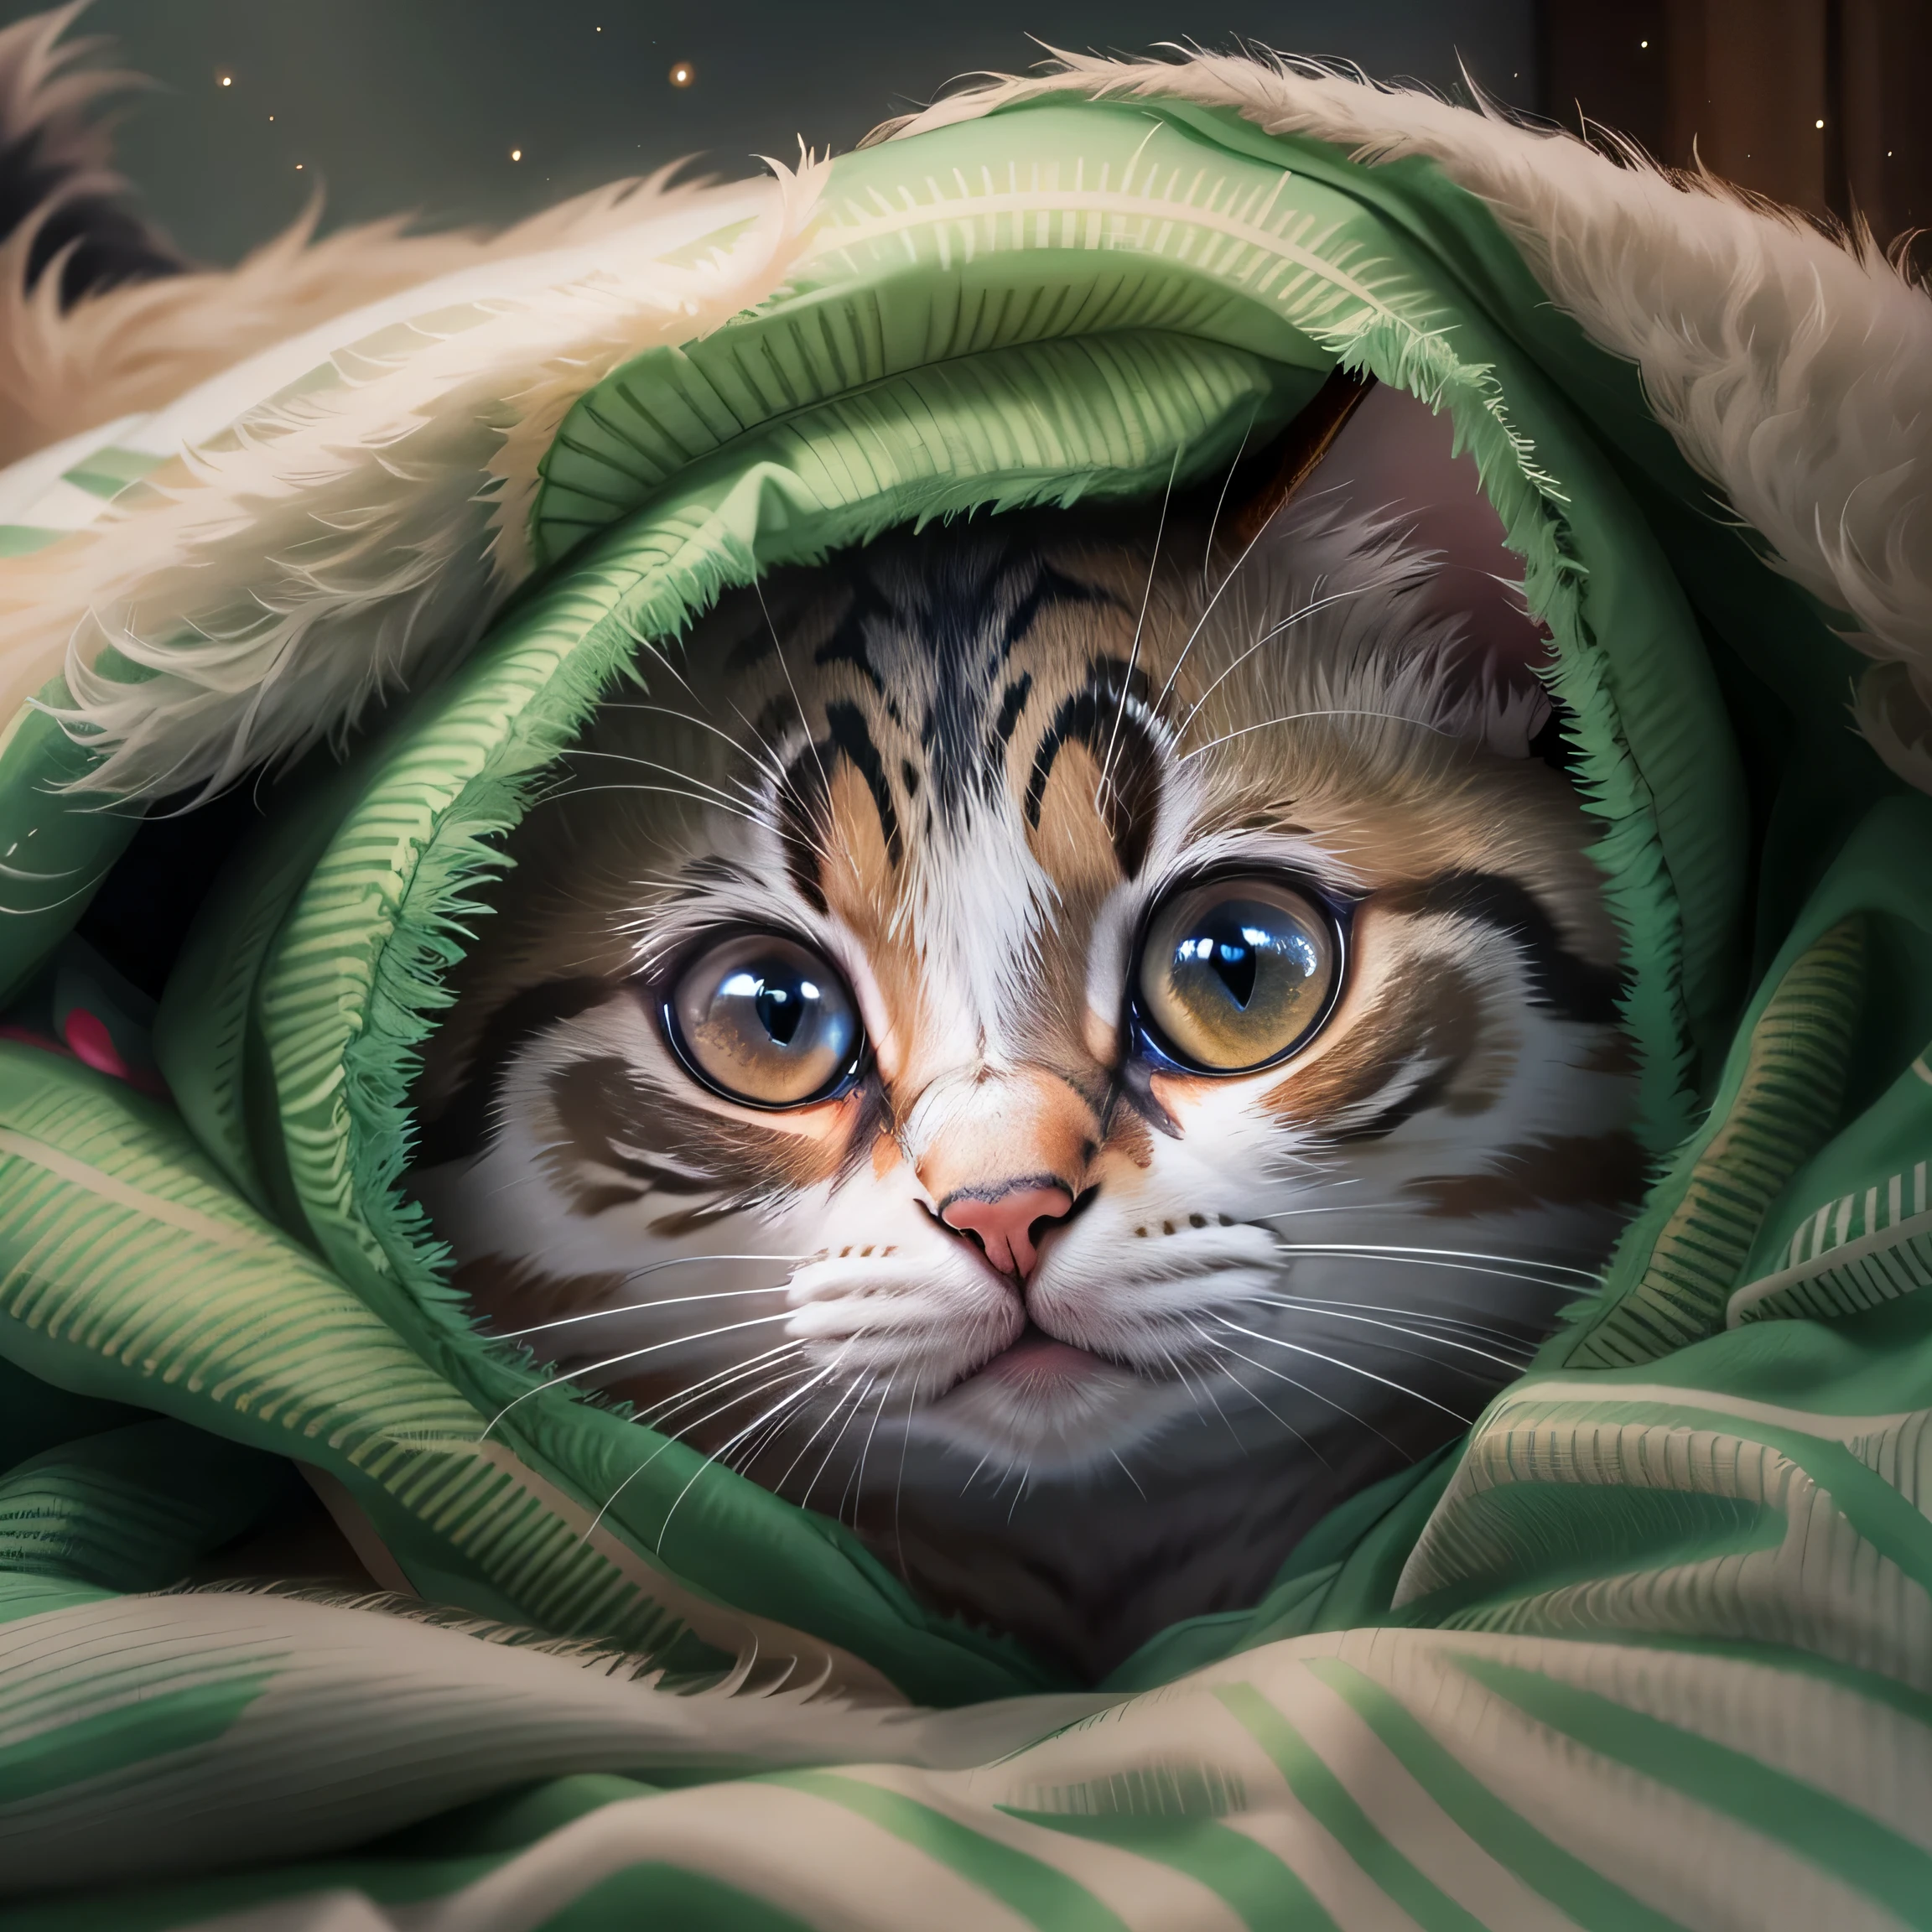 hay un gato que se esconde debajo de una manta, acurrucado bajo las sábanas, concealment, MIRANDOTE, cómodo debajo de la manta, Fotos De Gatos, cubierto con una manta, Cute Fotos De Gatos, expresión asustada, Gato enfermo acostado en el dormitorio., mirando a la cámara, con ojos lindos, fundar, Ojo agudo, lindo gato